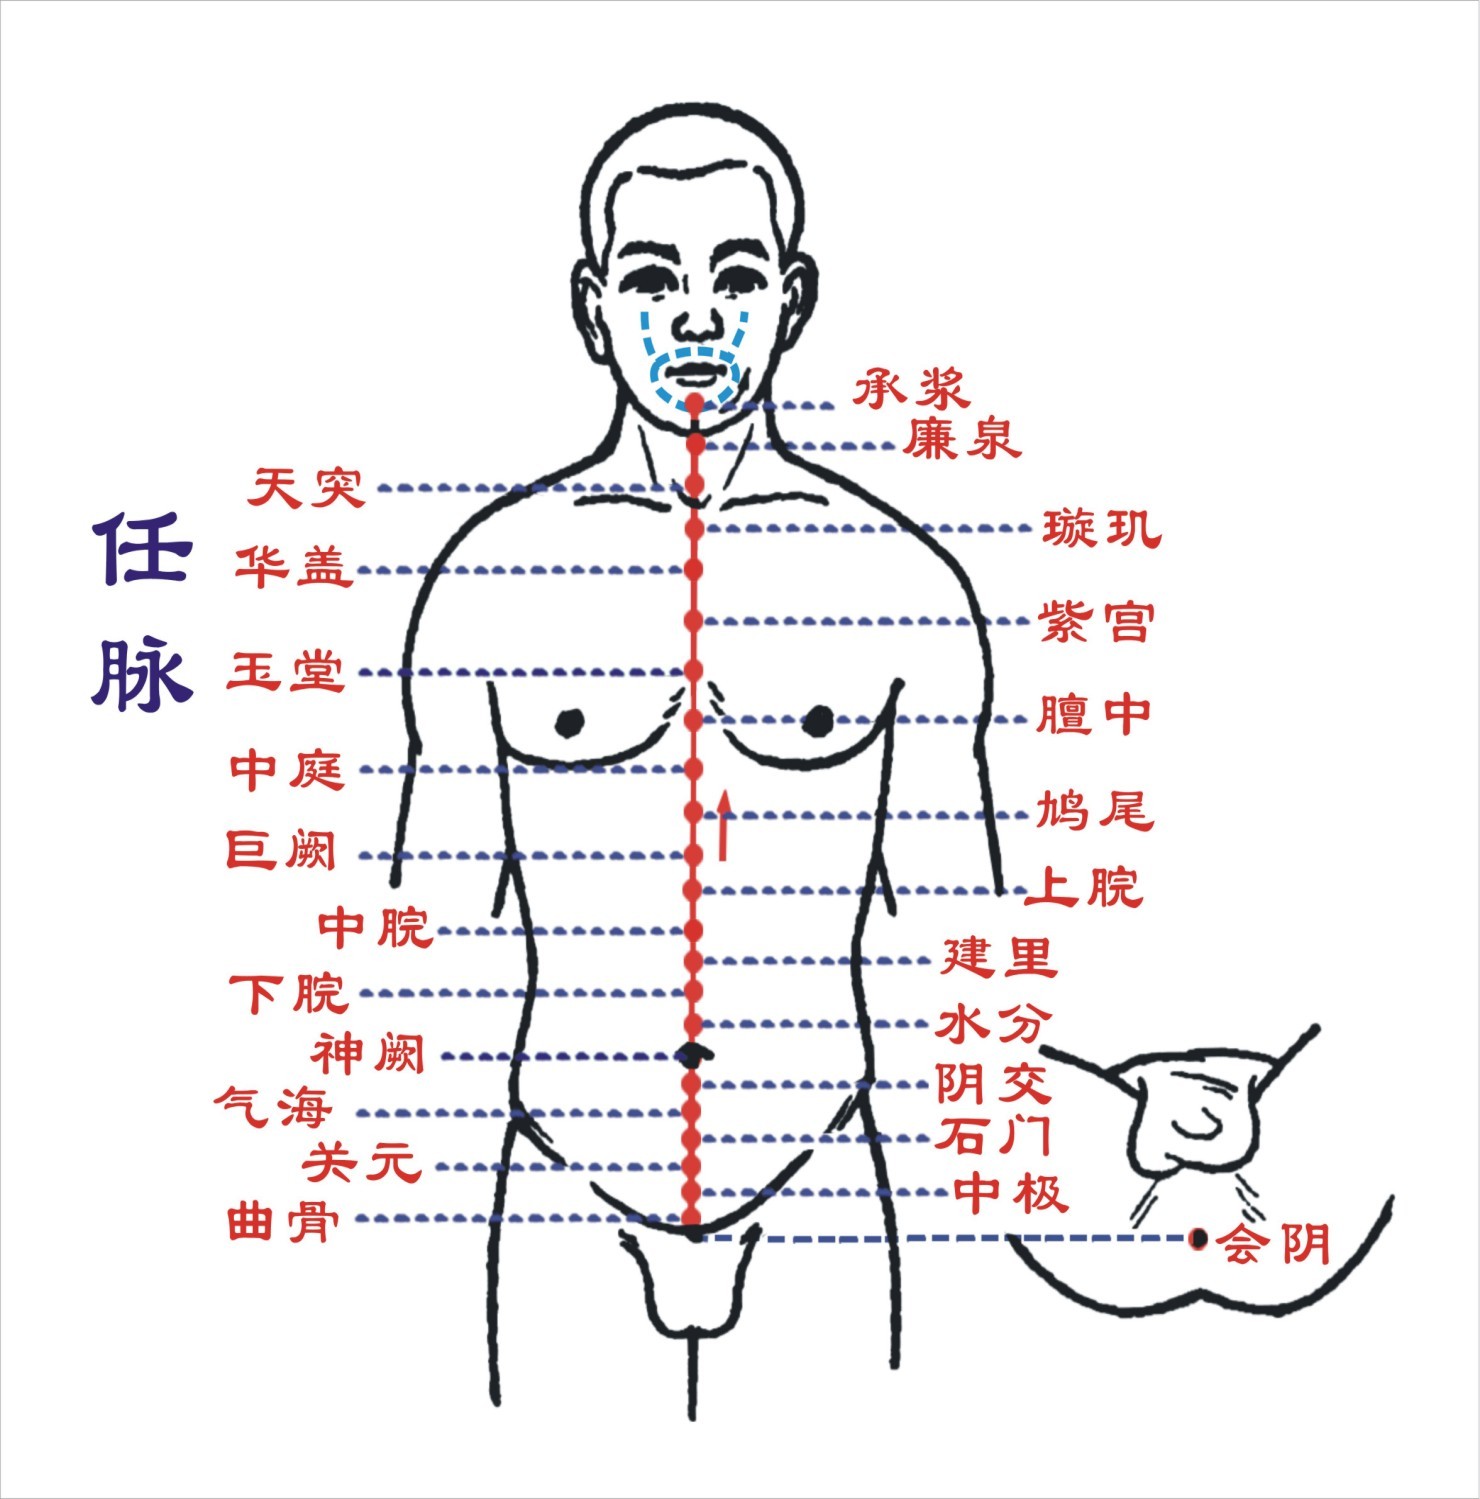 倪海厦针灸课笔记（05）- 任脉之水分、下脘、中脘、巨阙及基本补泻手法 - 知乎